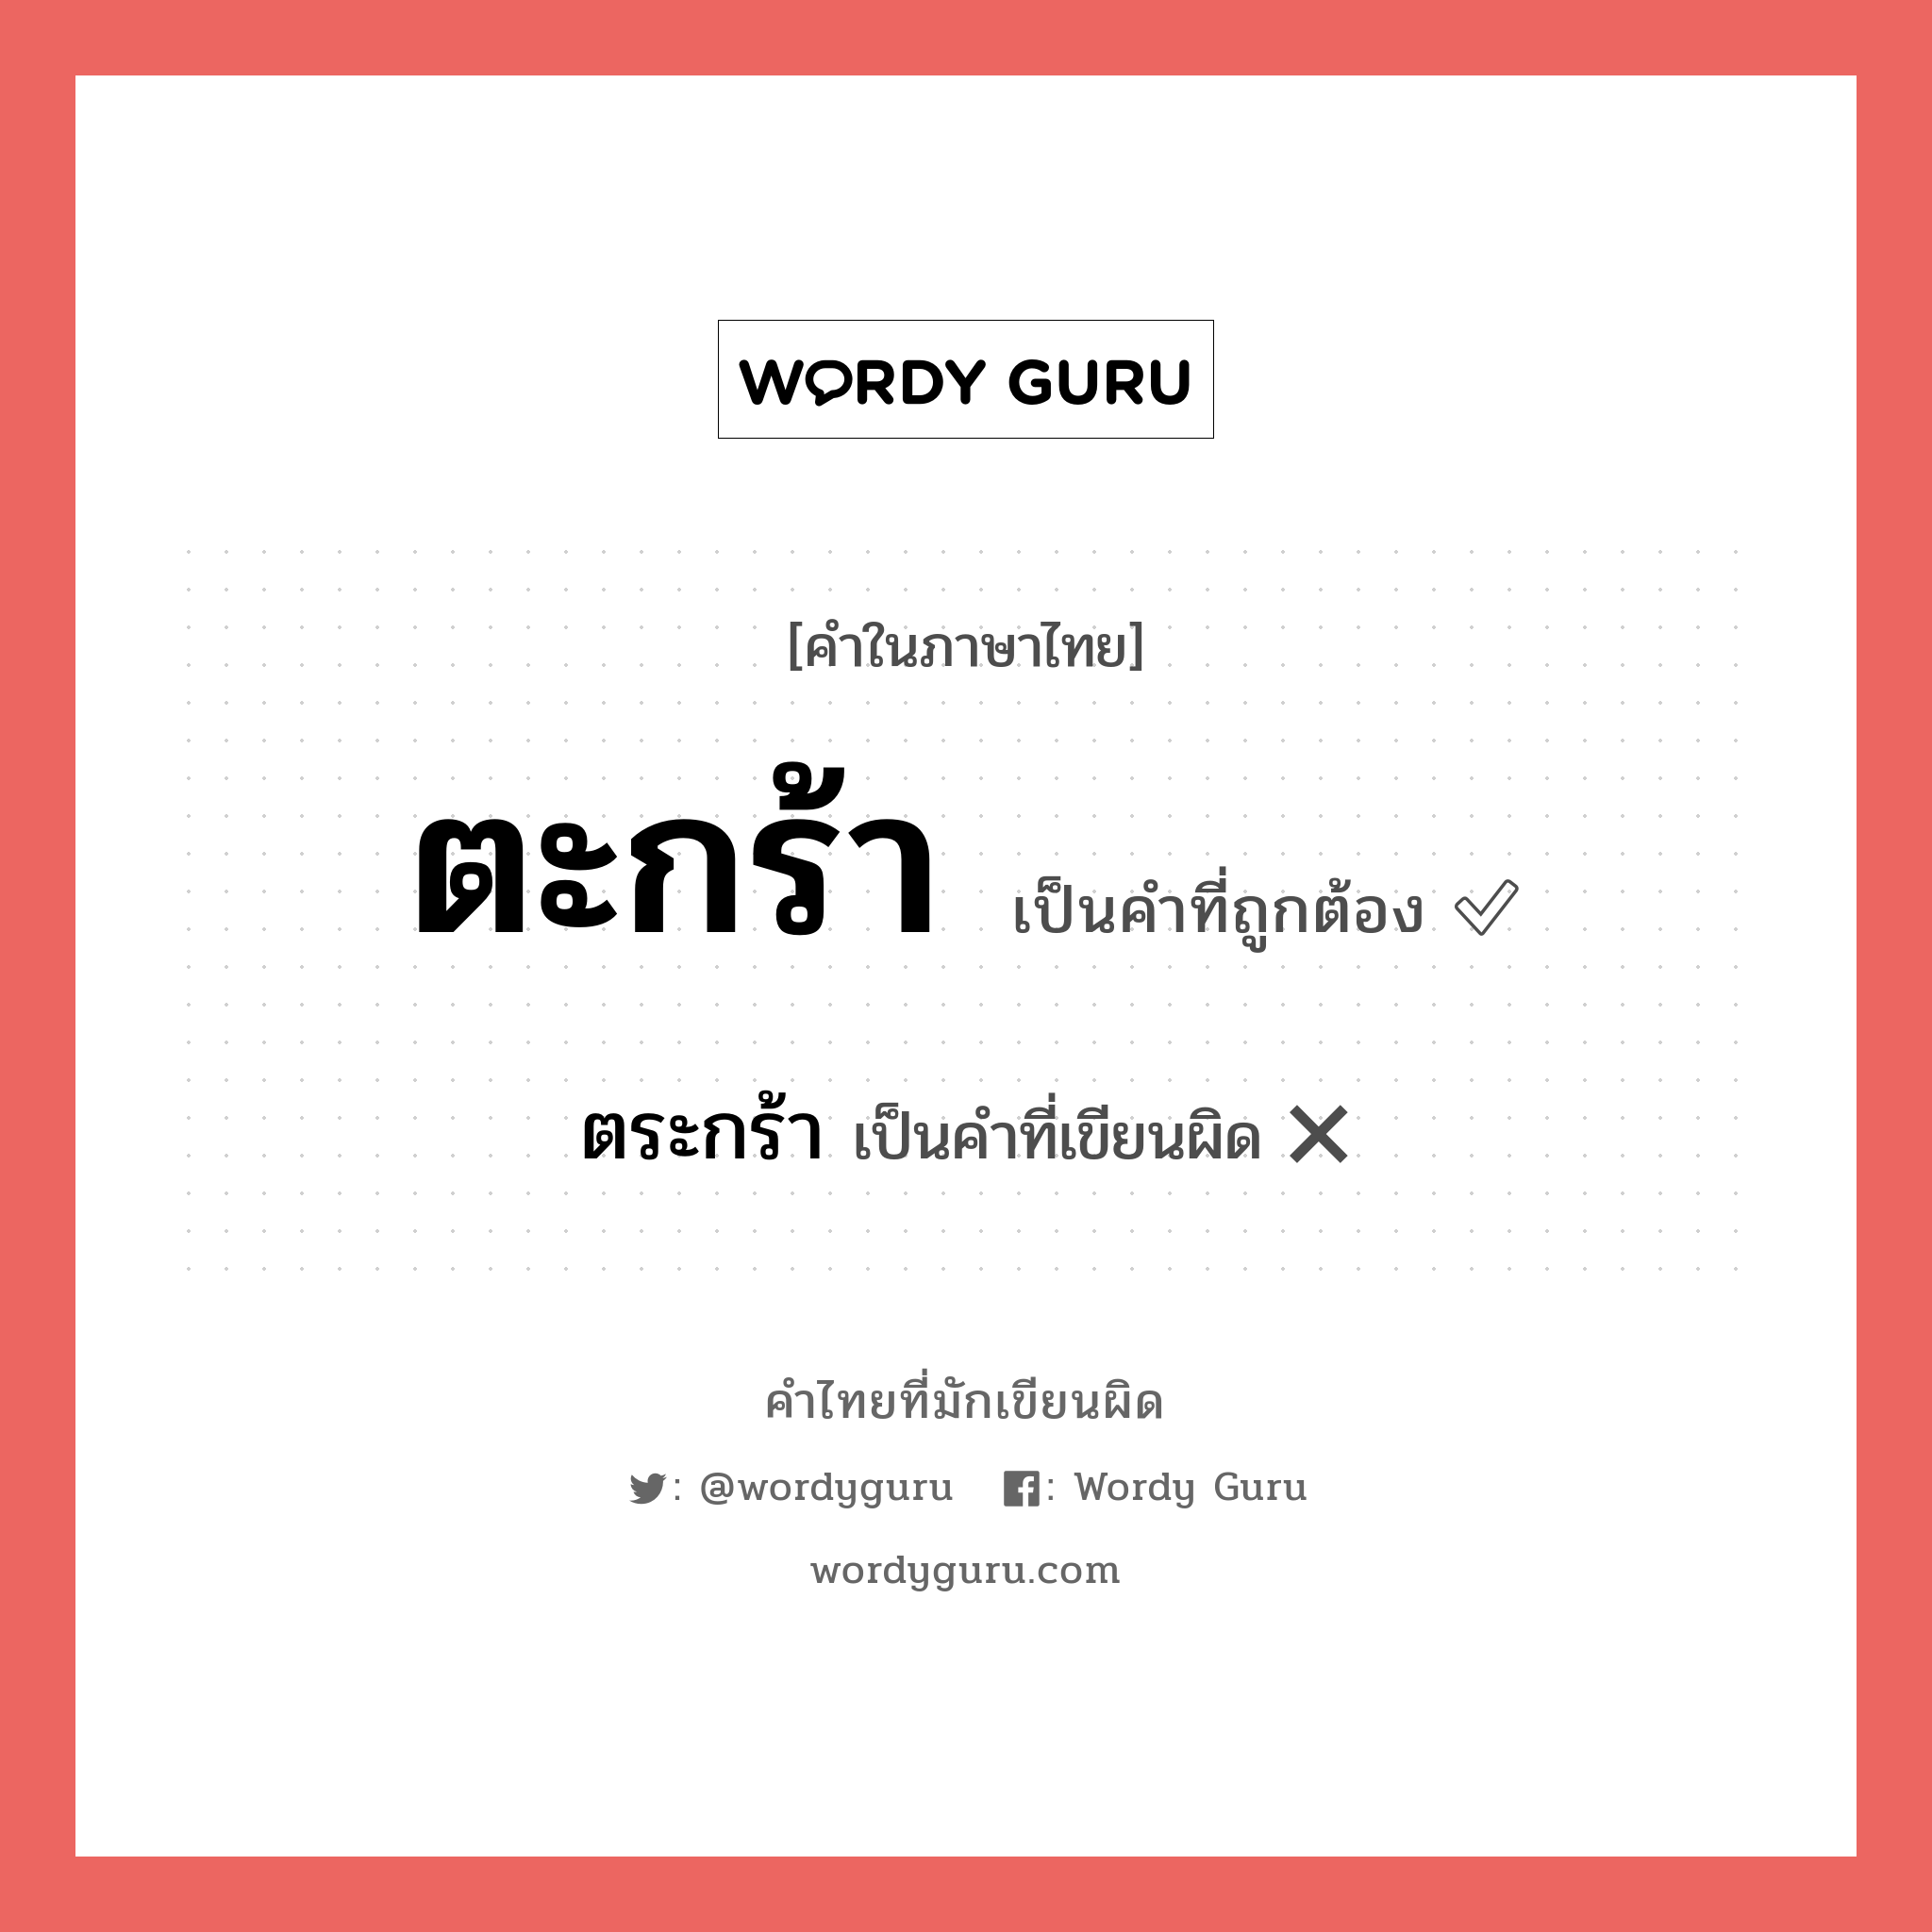 ตระกร้า หรือ ตะกร้า คำไหนเขียนถูก?, คำในภาษาไทยที่มักเขียนผิด ตระกร้า คำที่ผิด ❌ ตะกร้า